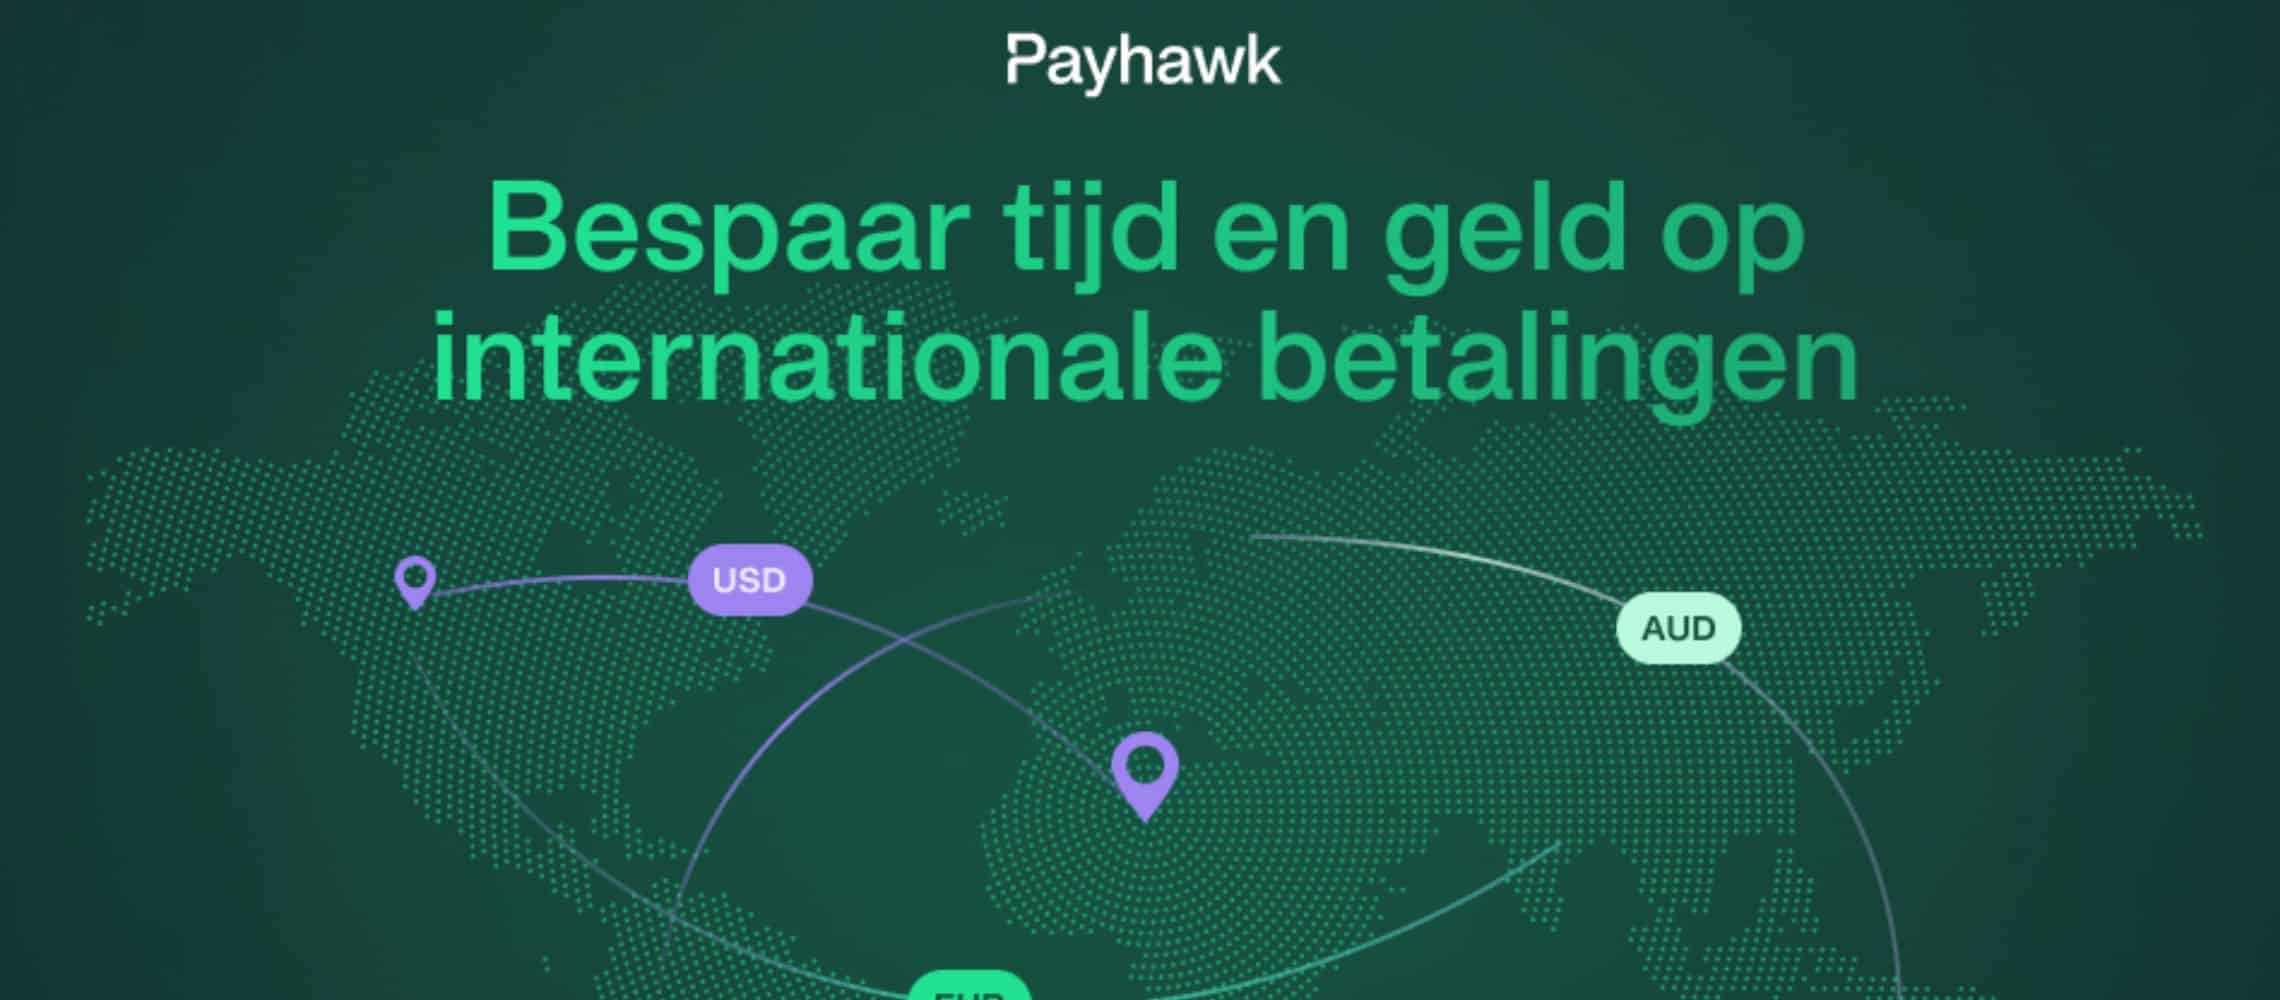 Payhawk maakt internationale betalingen in vijftig valuta mogelijk in samenwerking met Wise Platform